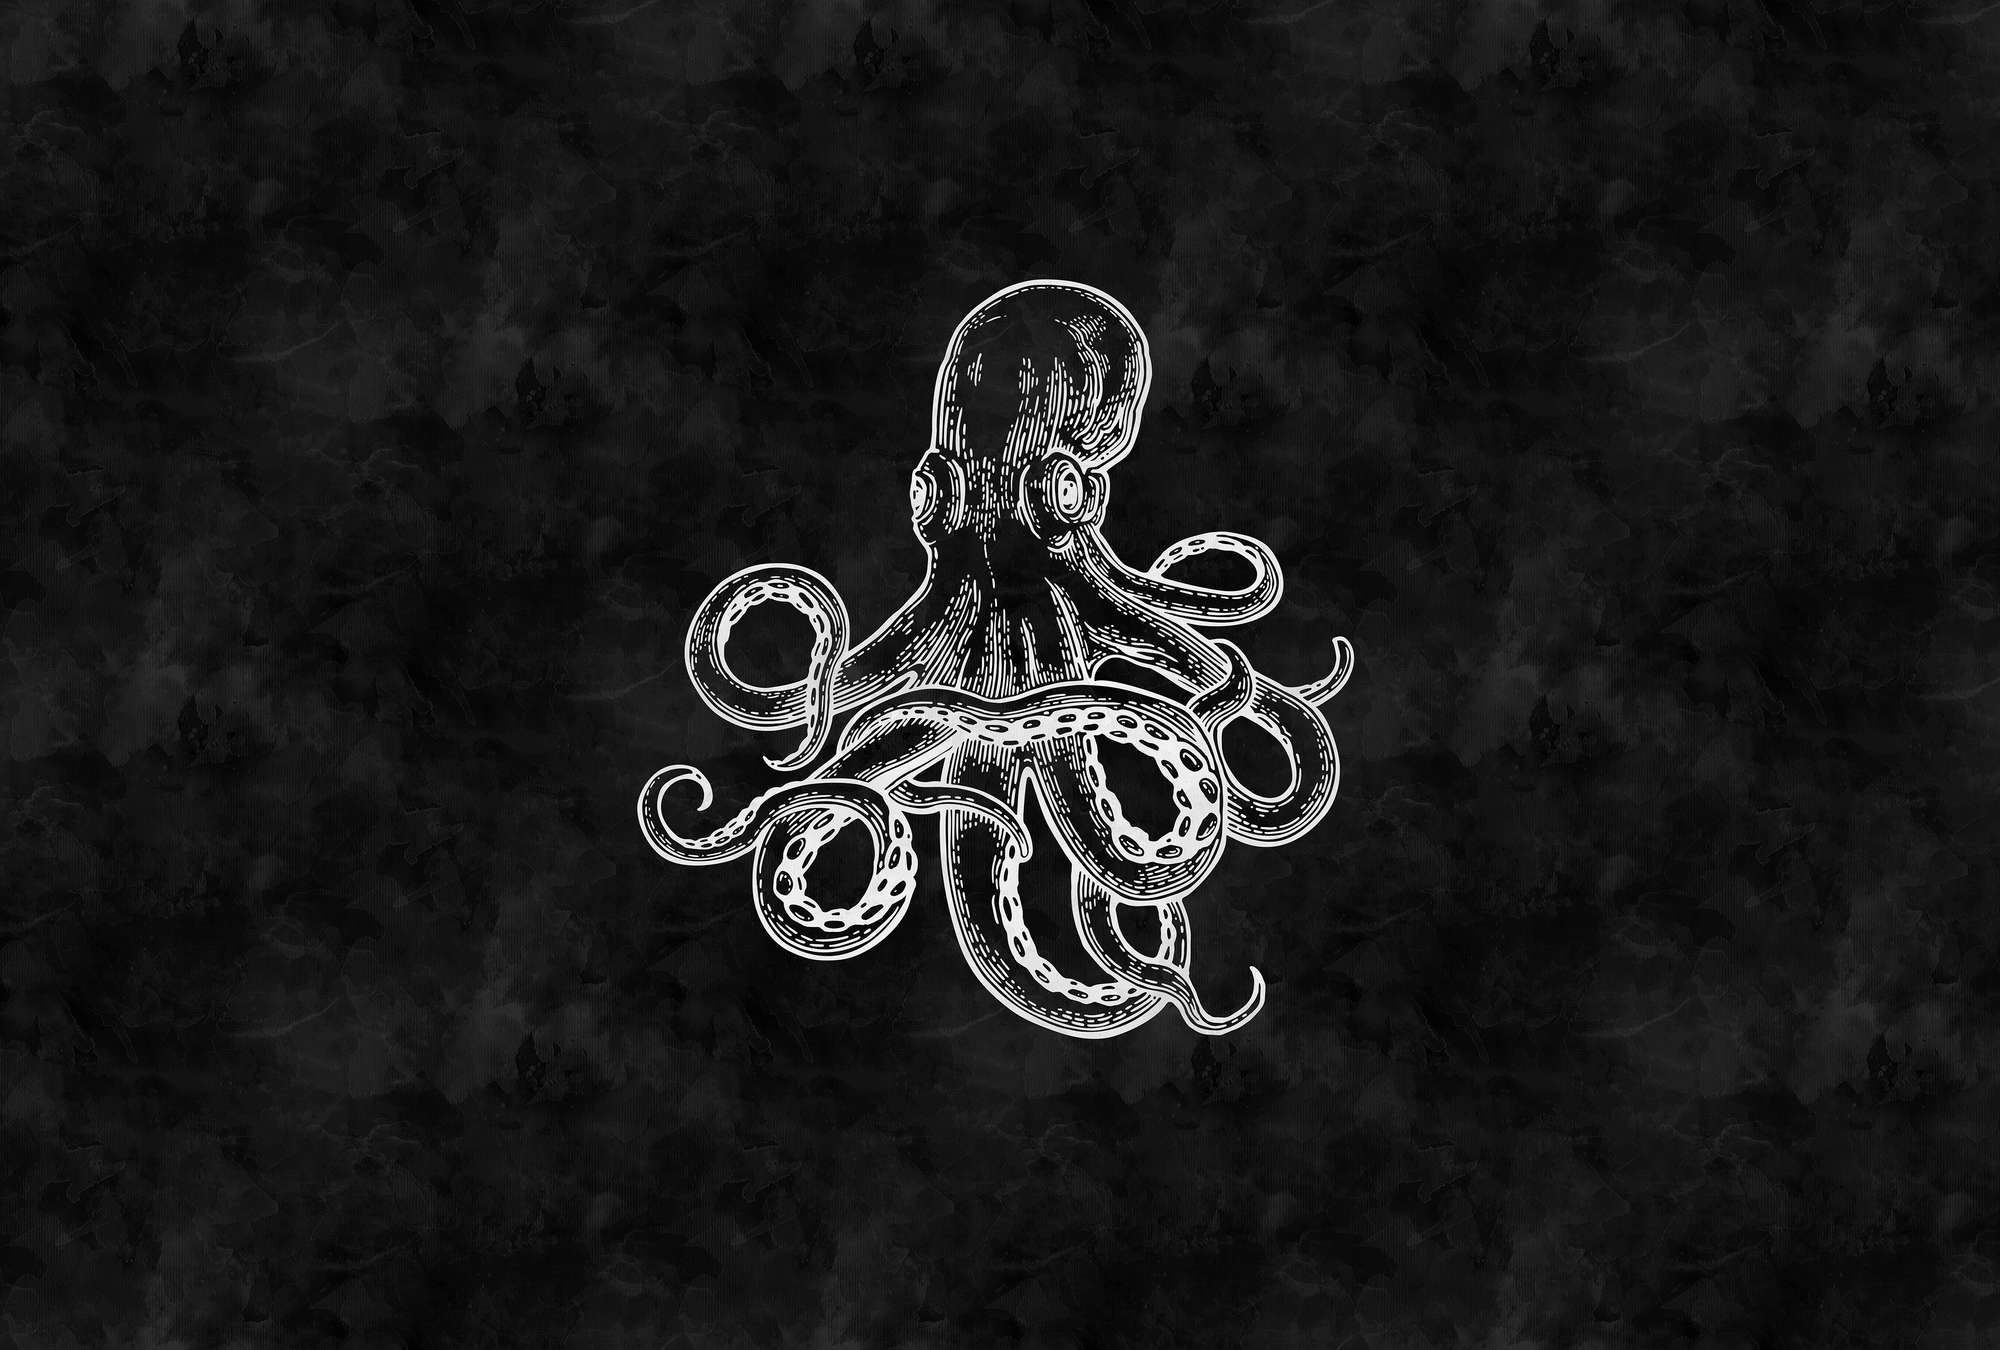             Zwart & Wit Octopus & Krijtbord Kijk Behang
        